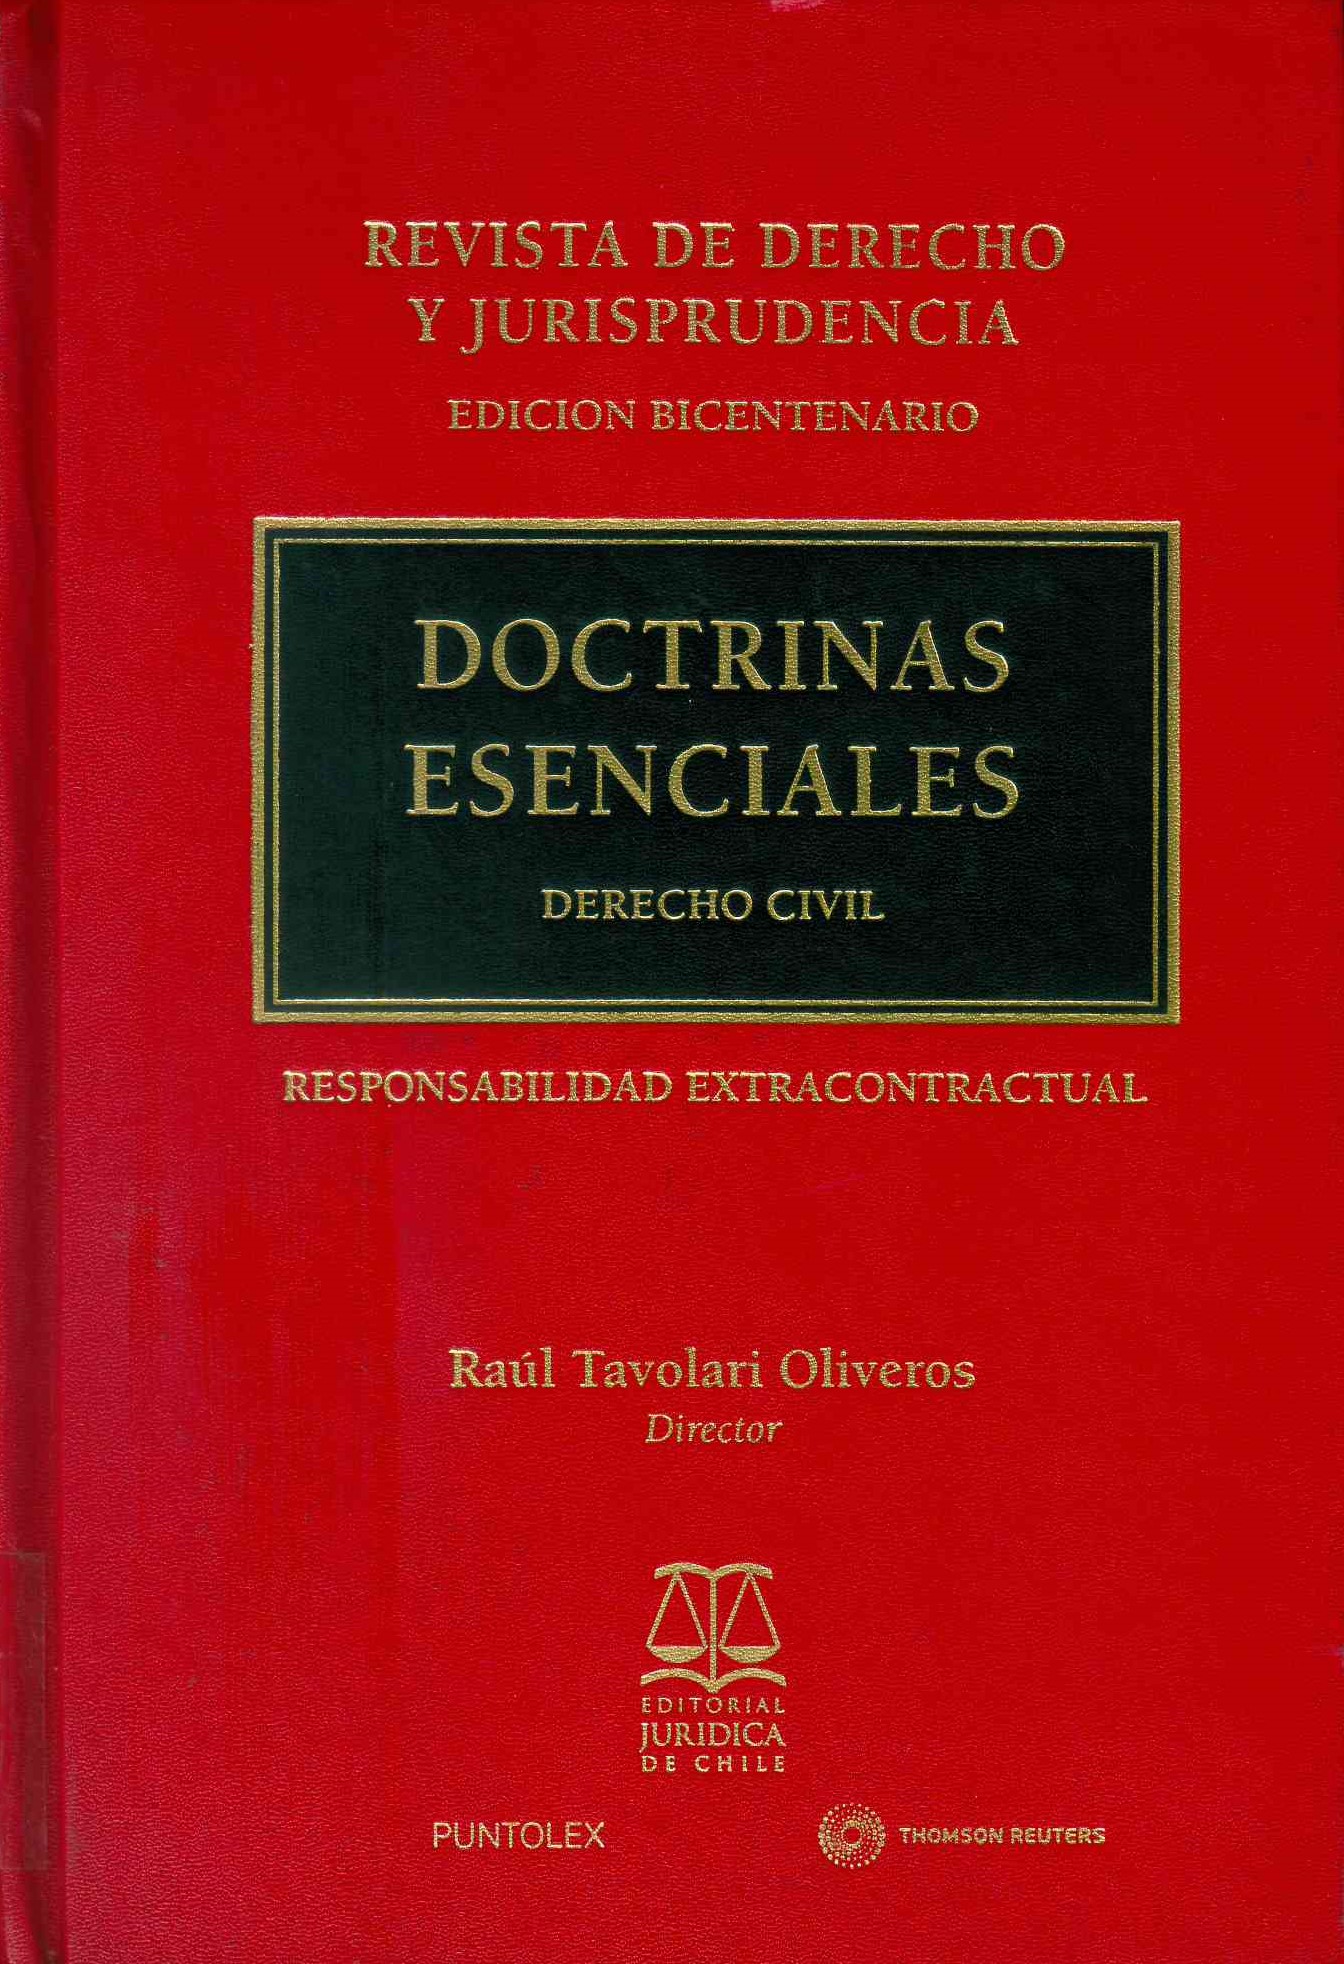 Doctrinas esenciales: derecho Civil